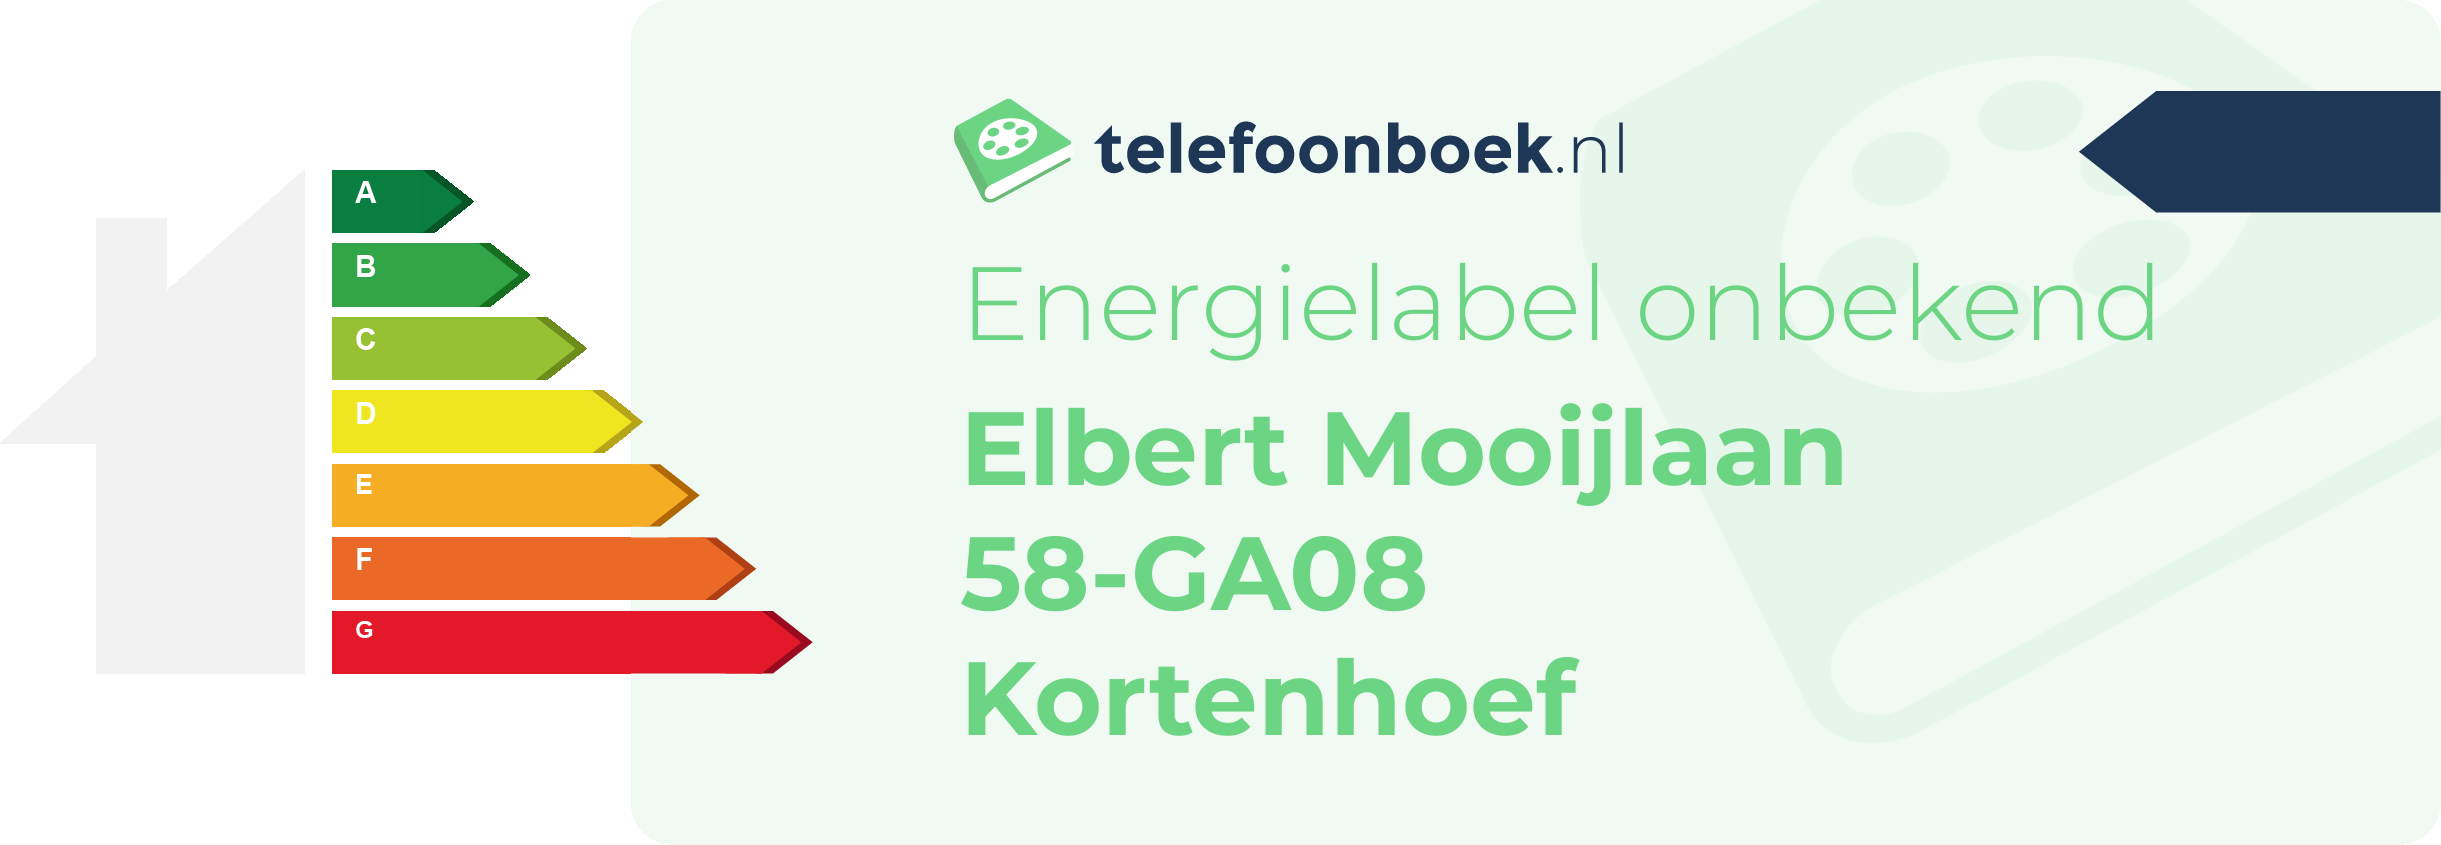 Energielabel Elbert Mooijlaan 58-GA08 Kortenhoef